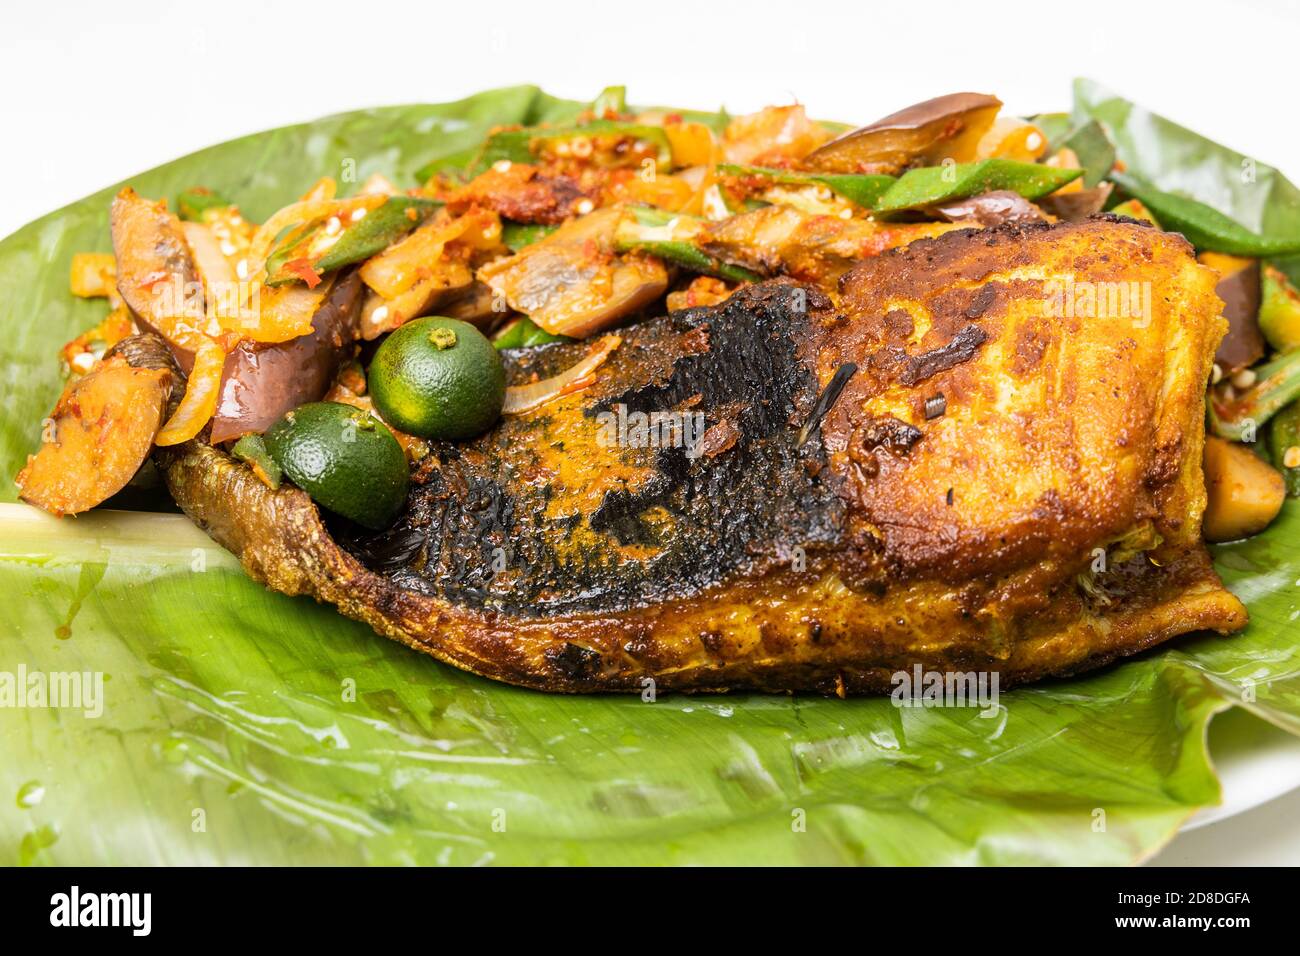 Gros plan de poissons grillés populaires aux épices et aux légumes servi sur une feuille de banane Banque D'Images